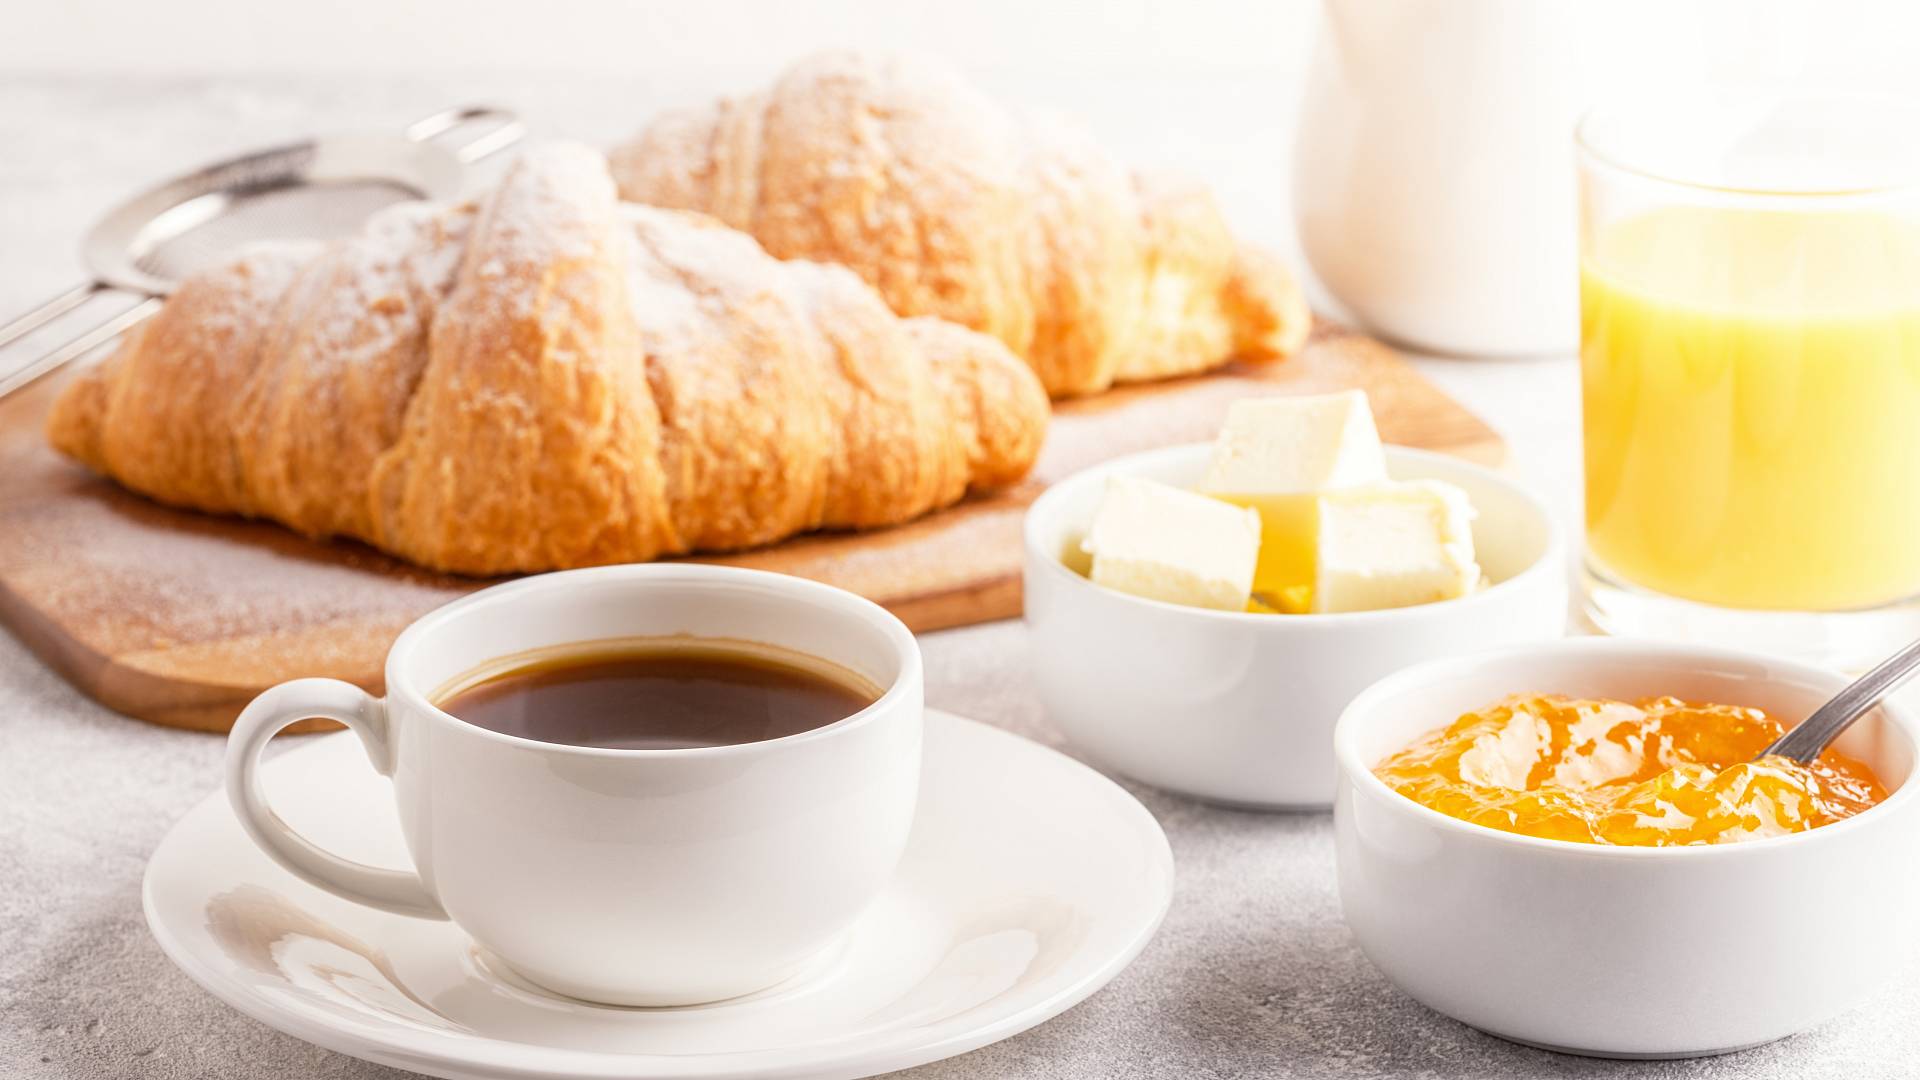 Frühstück mit Croissant, Kaffee und Konfitüre